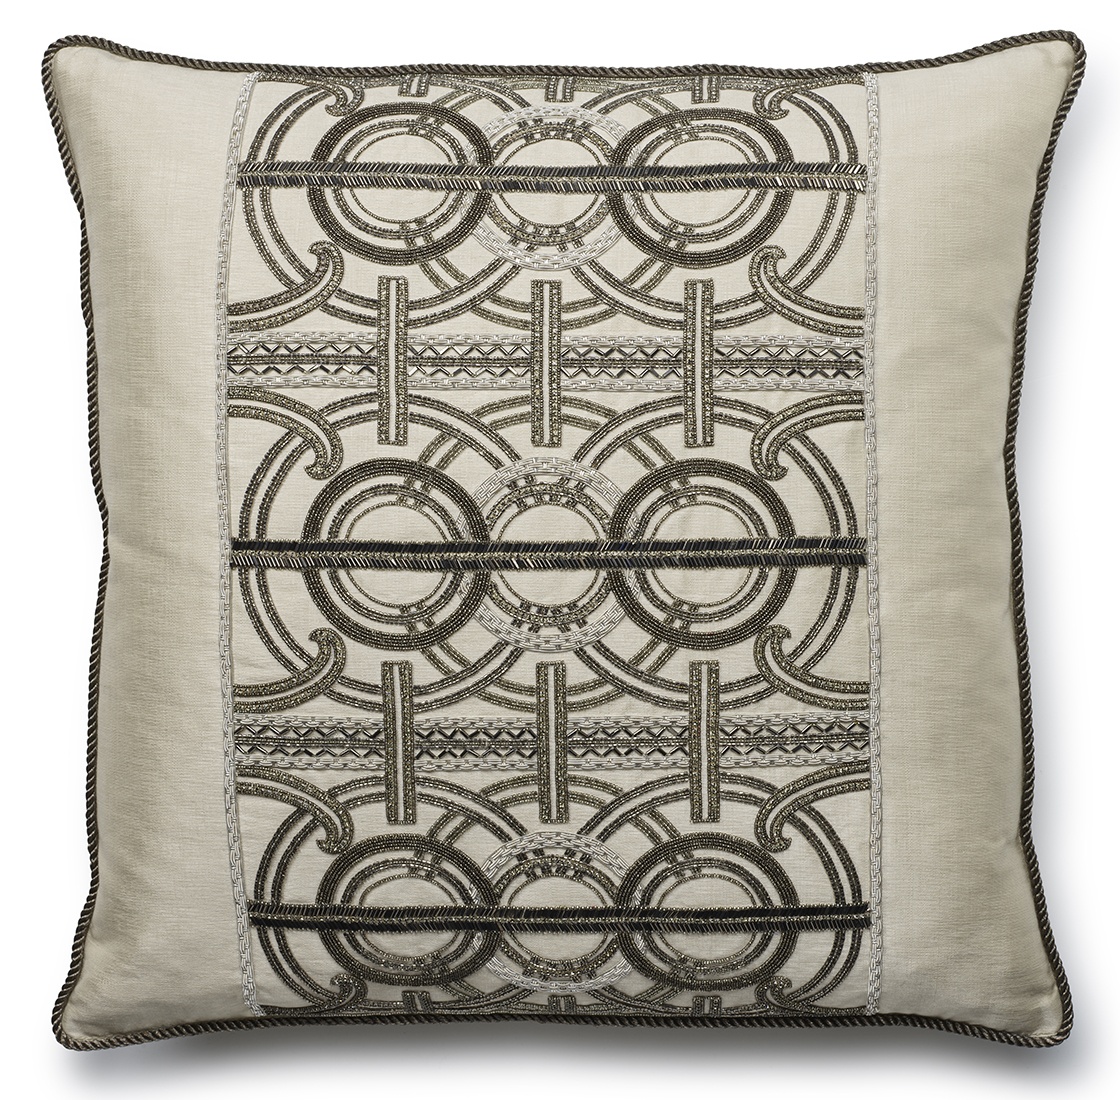 Circe cushion in Lagan silk - Breeze